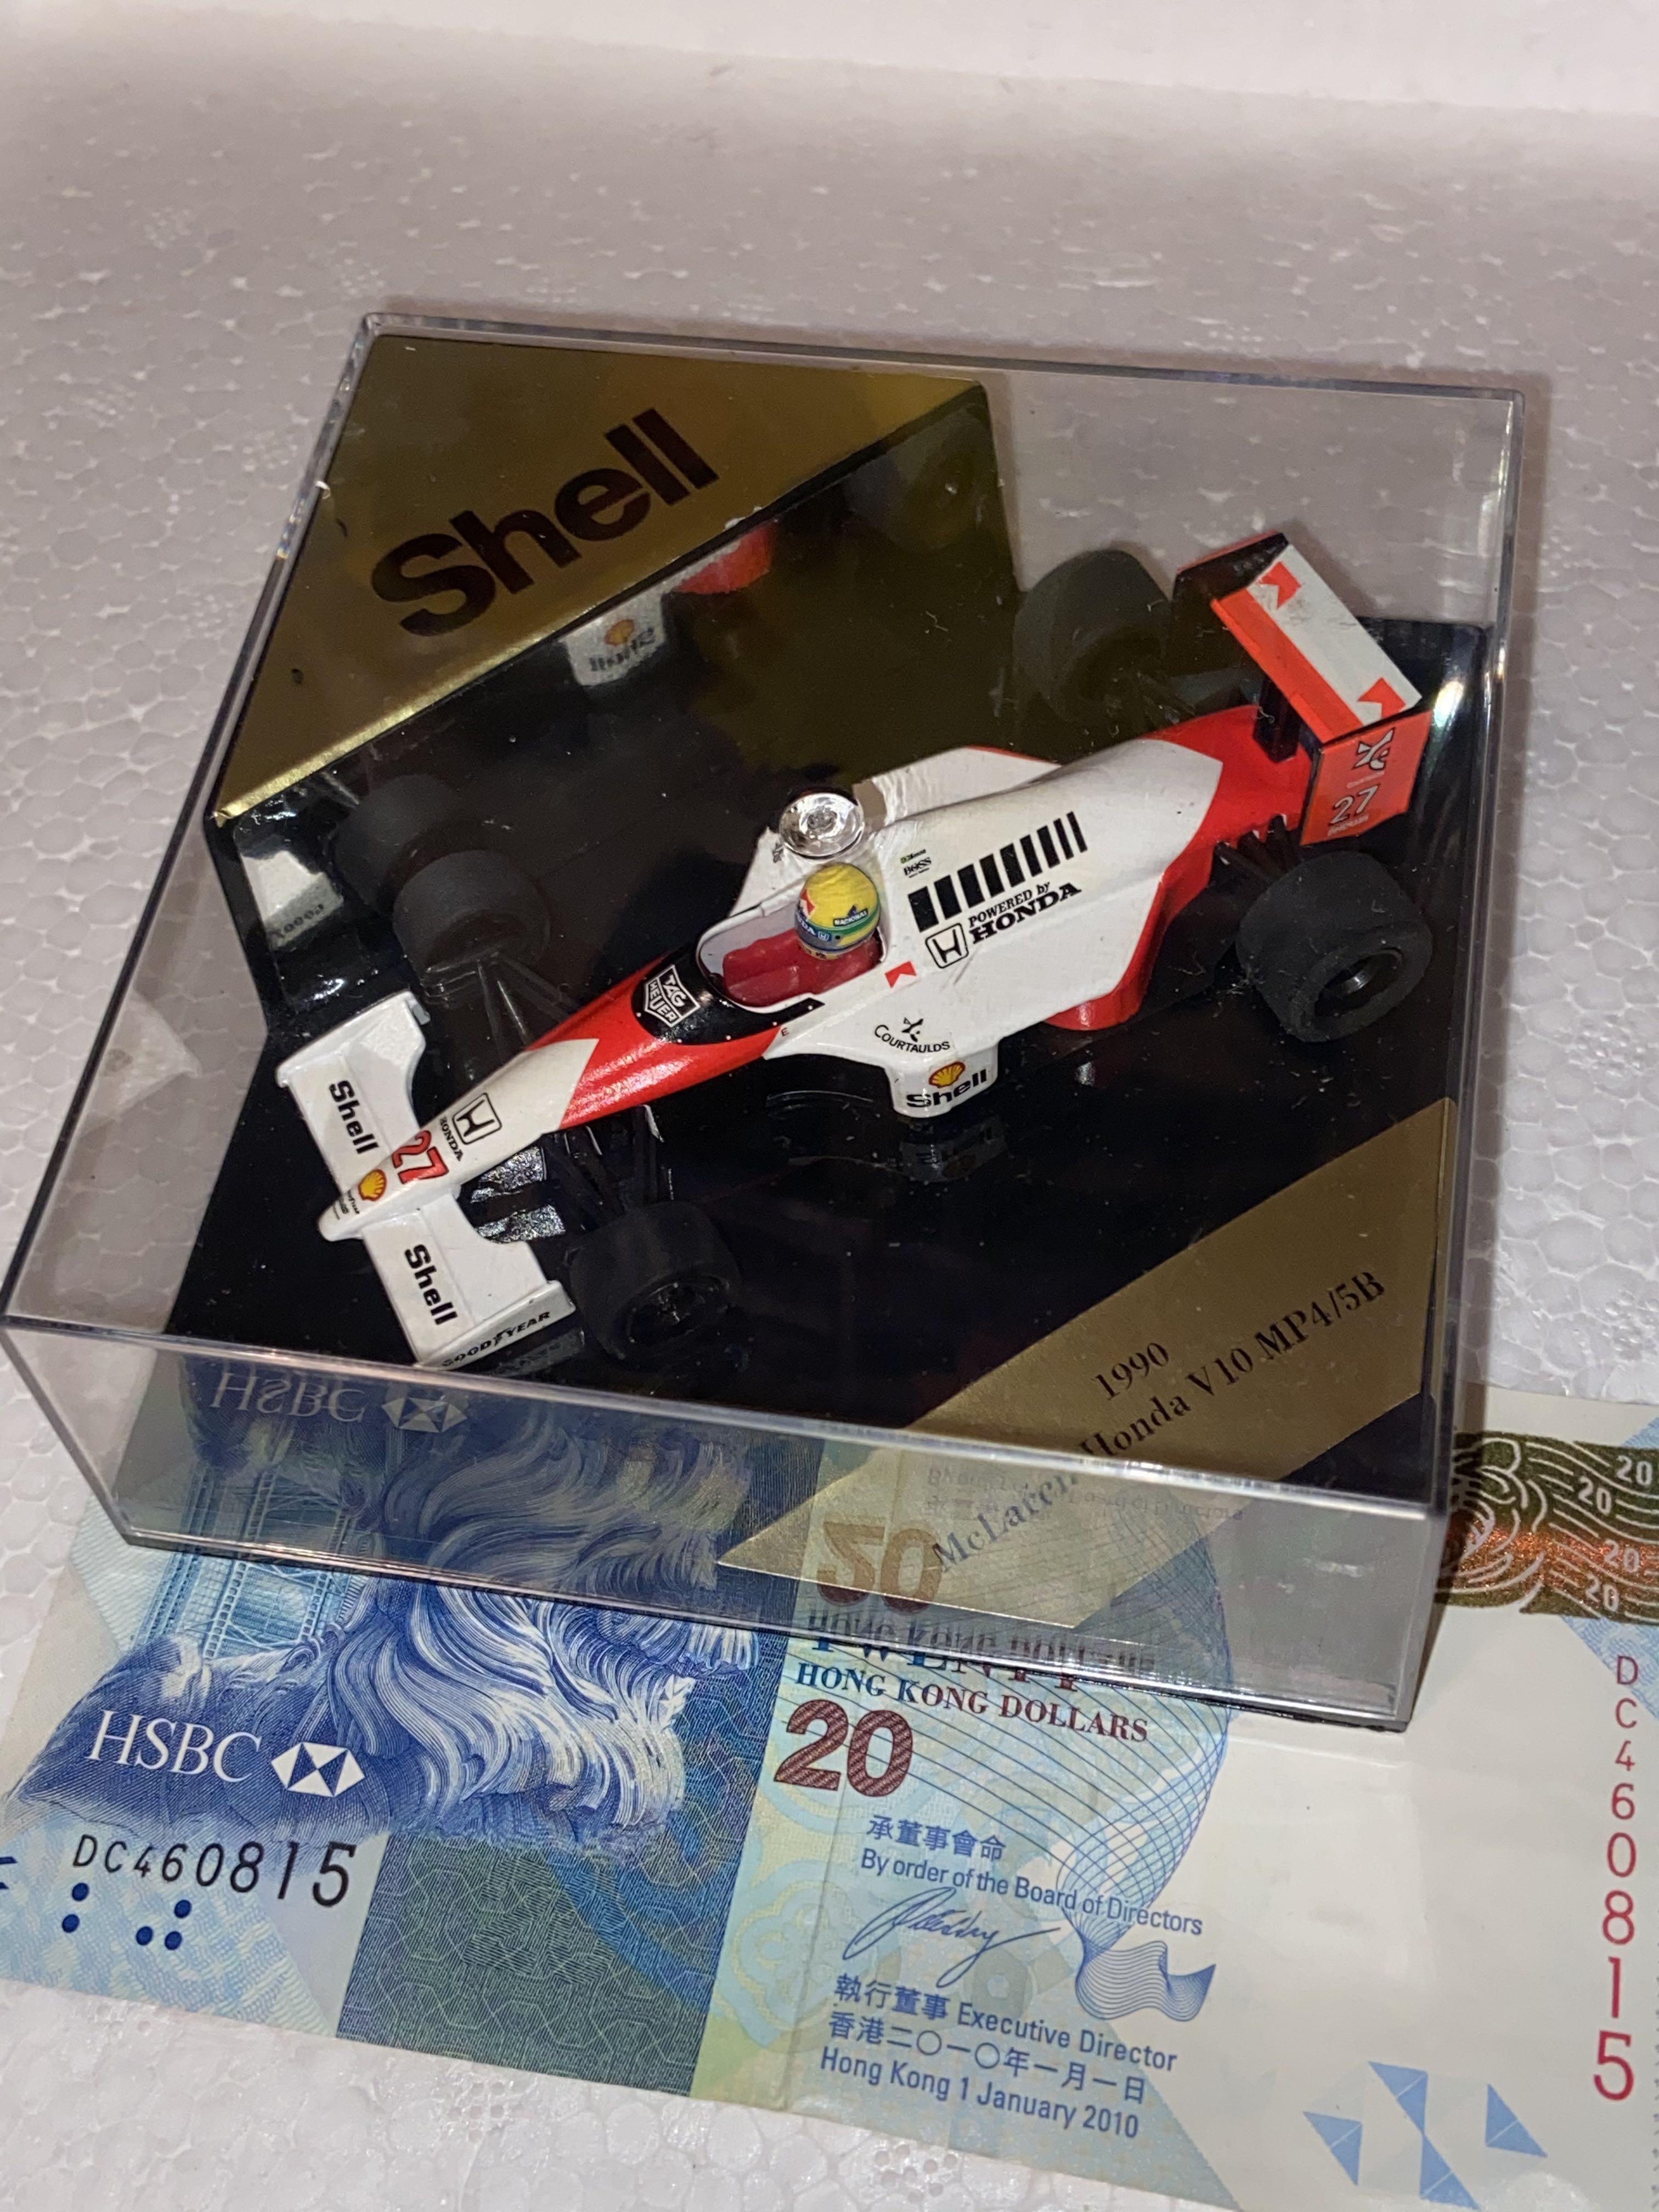 一級方程式賽車模型onyx Formula 1 One Model Models Shell 1990 Mclaren Honda V10 Mp4 5b Made In Portugal 興趣及遊戲 玩具 遊戲類 Carousell